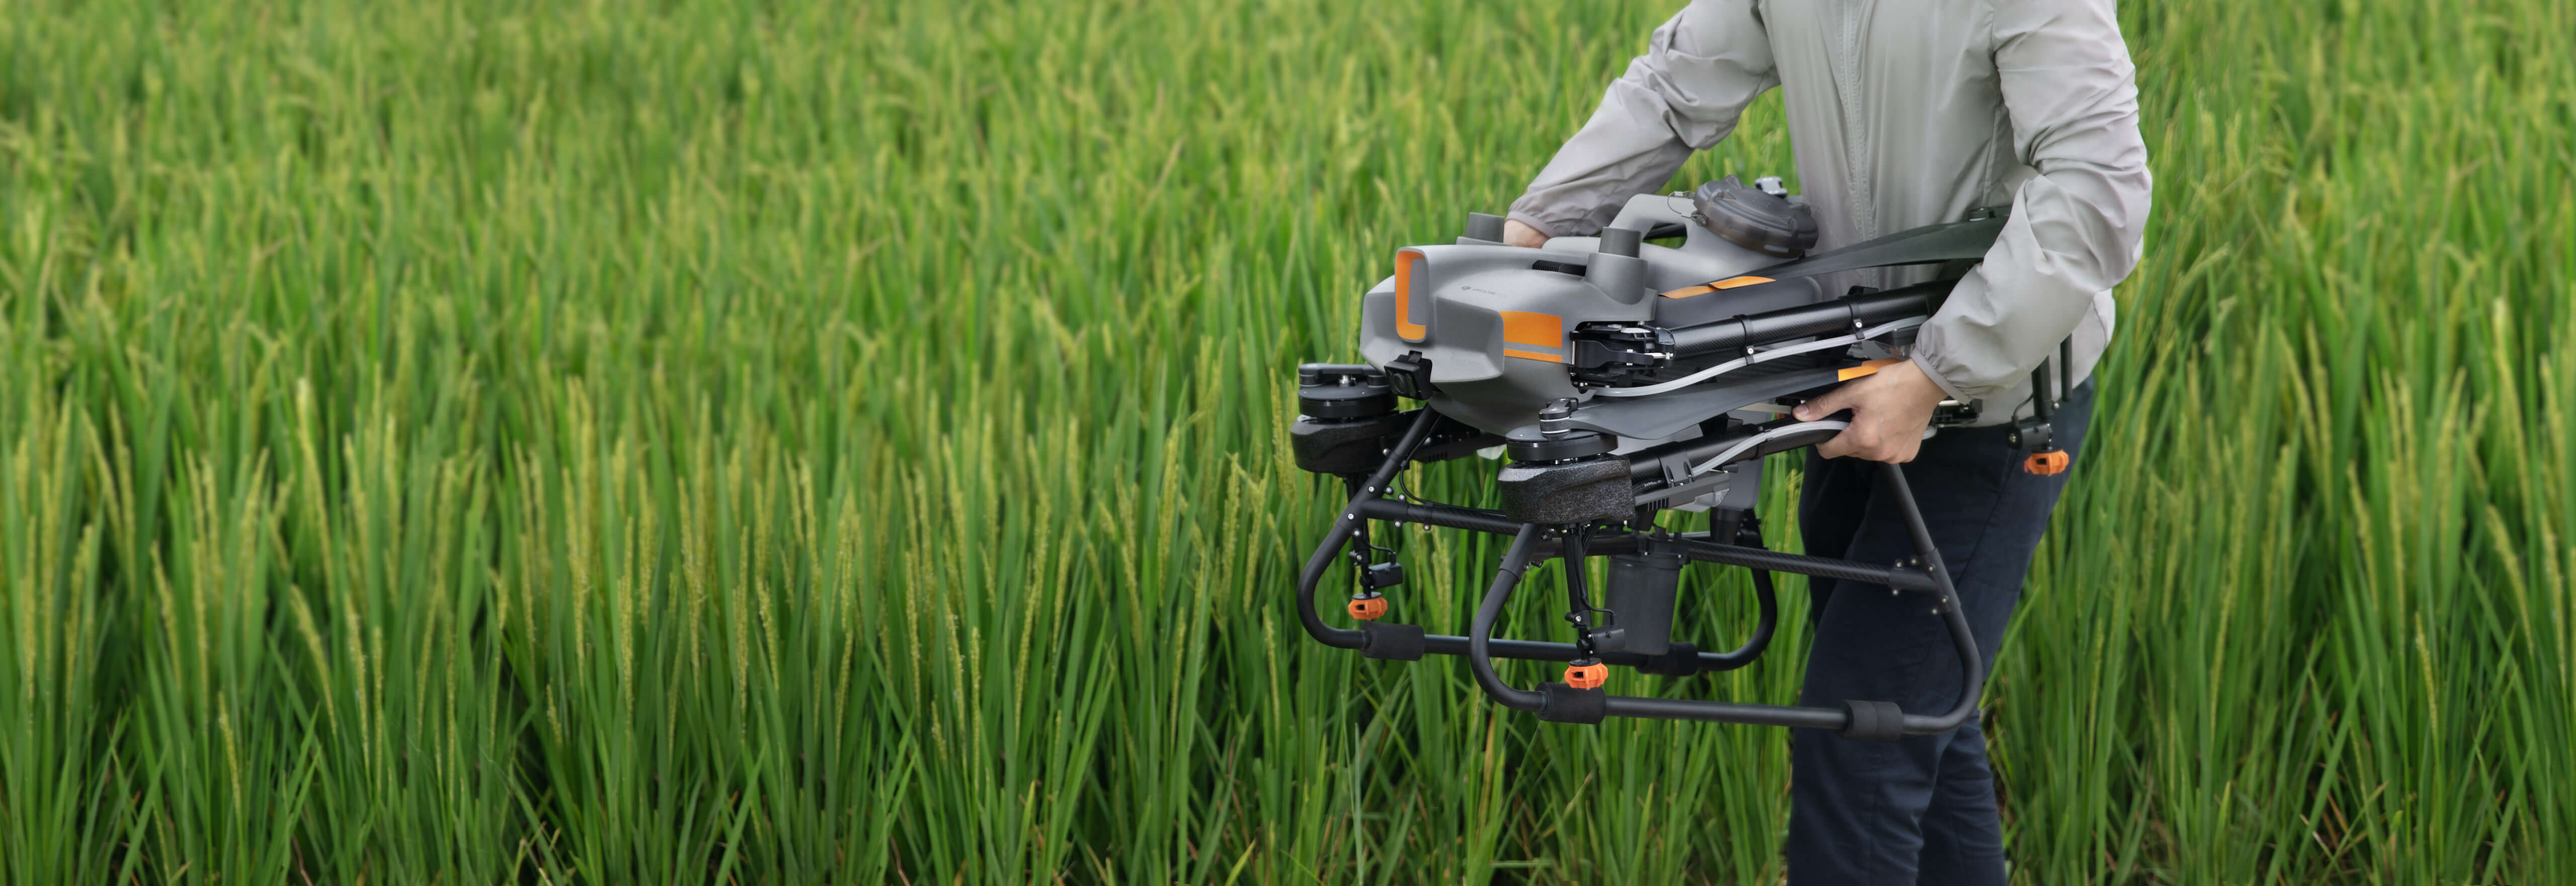 DJI Agras T10. Инновационный дрон для цифрового сельского хозяйства